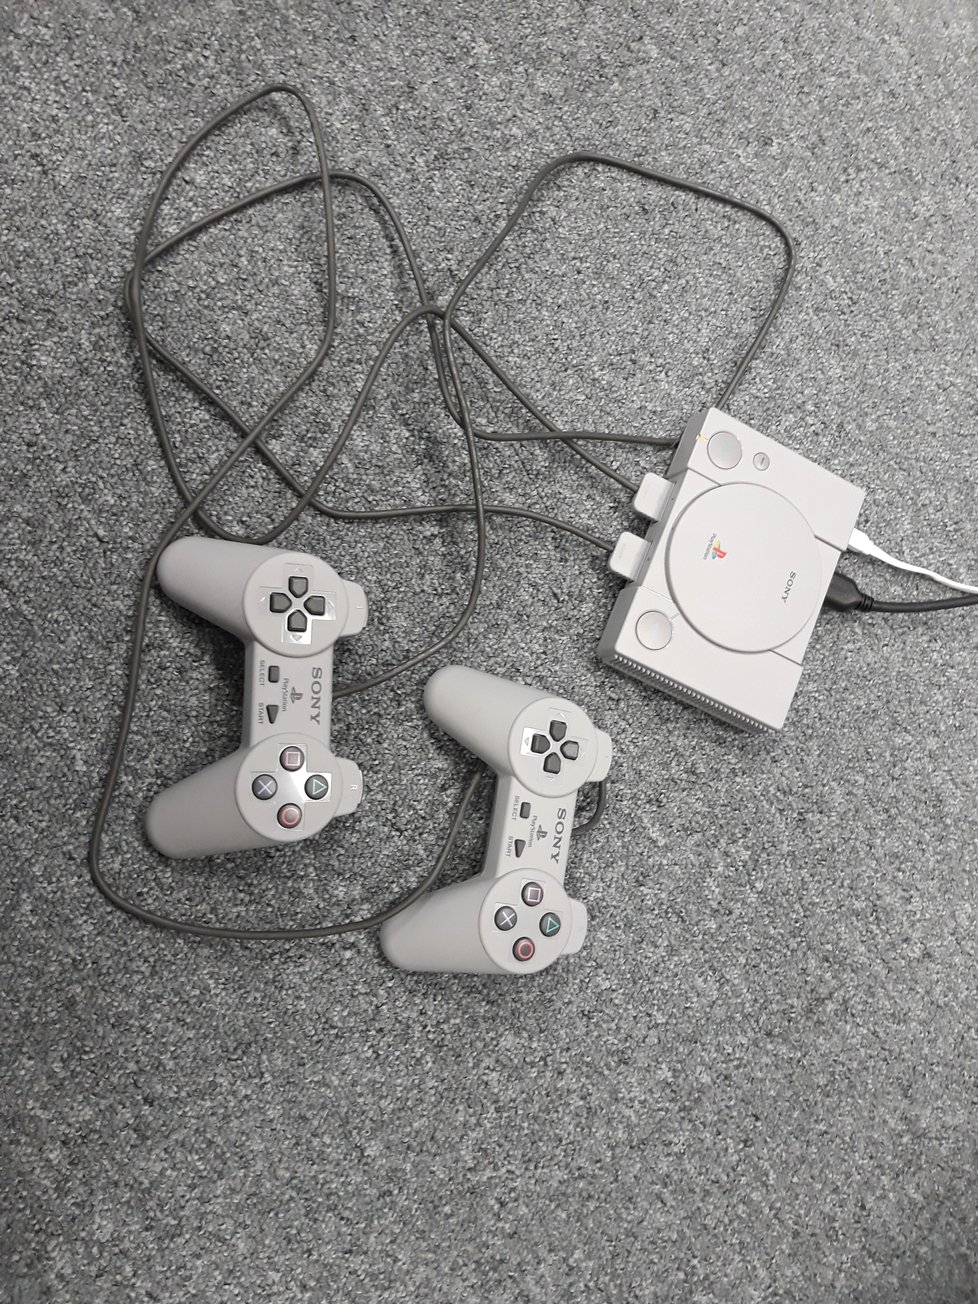 PlayStation Classic se dodává se dvěma ovladači.